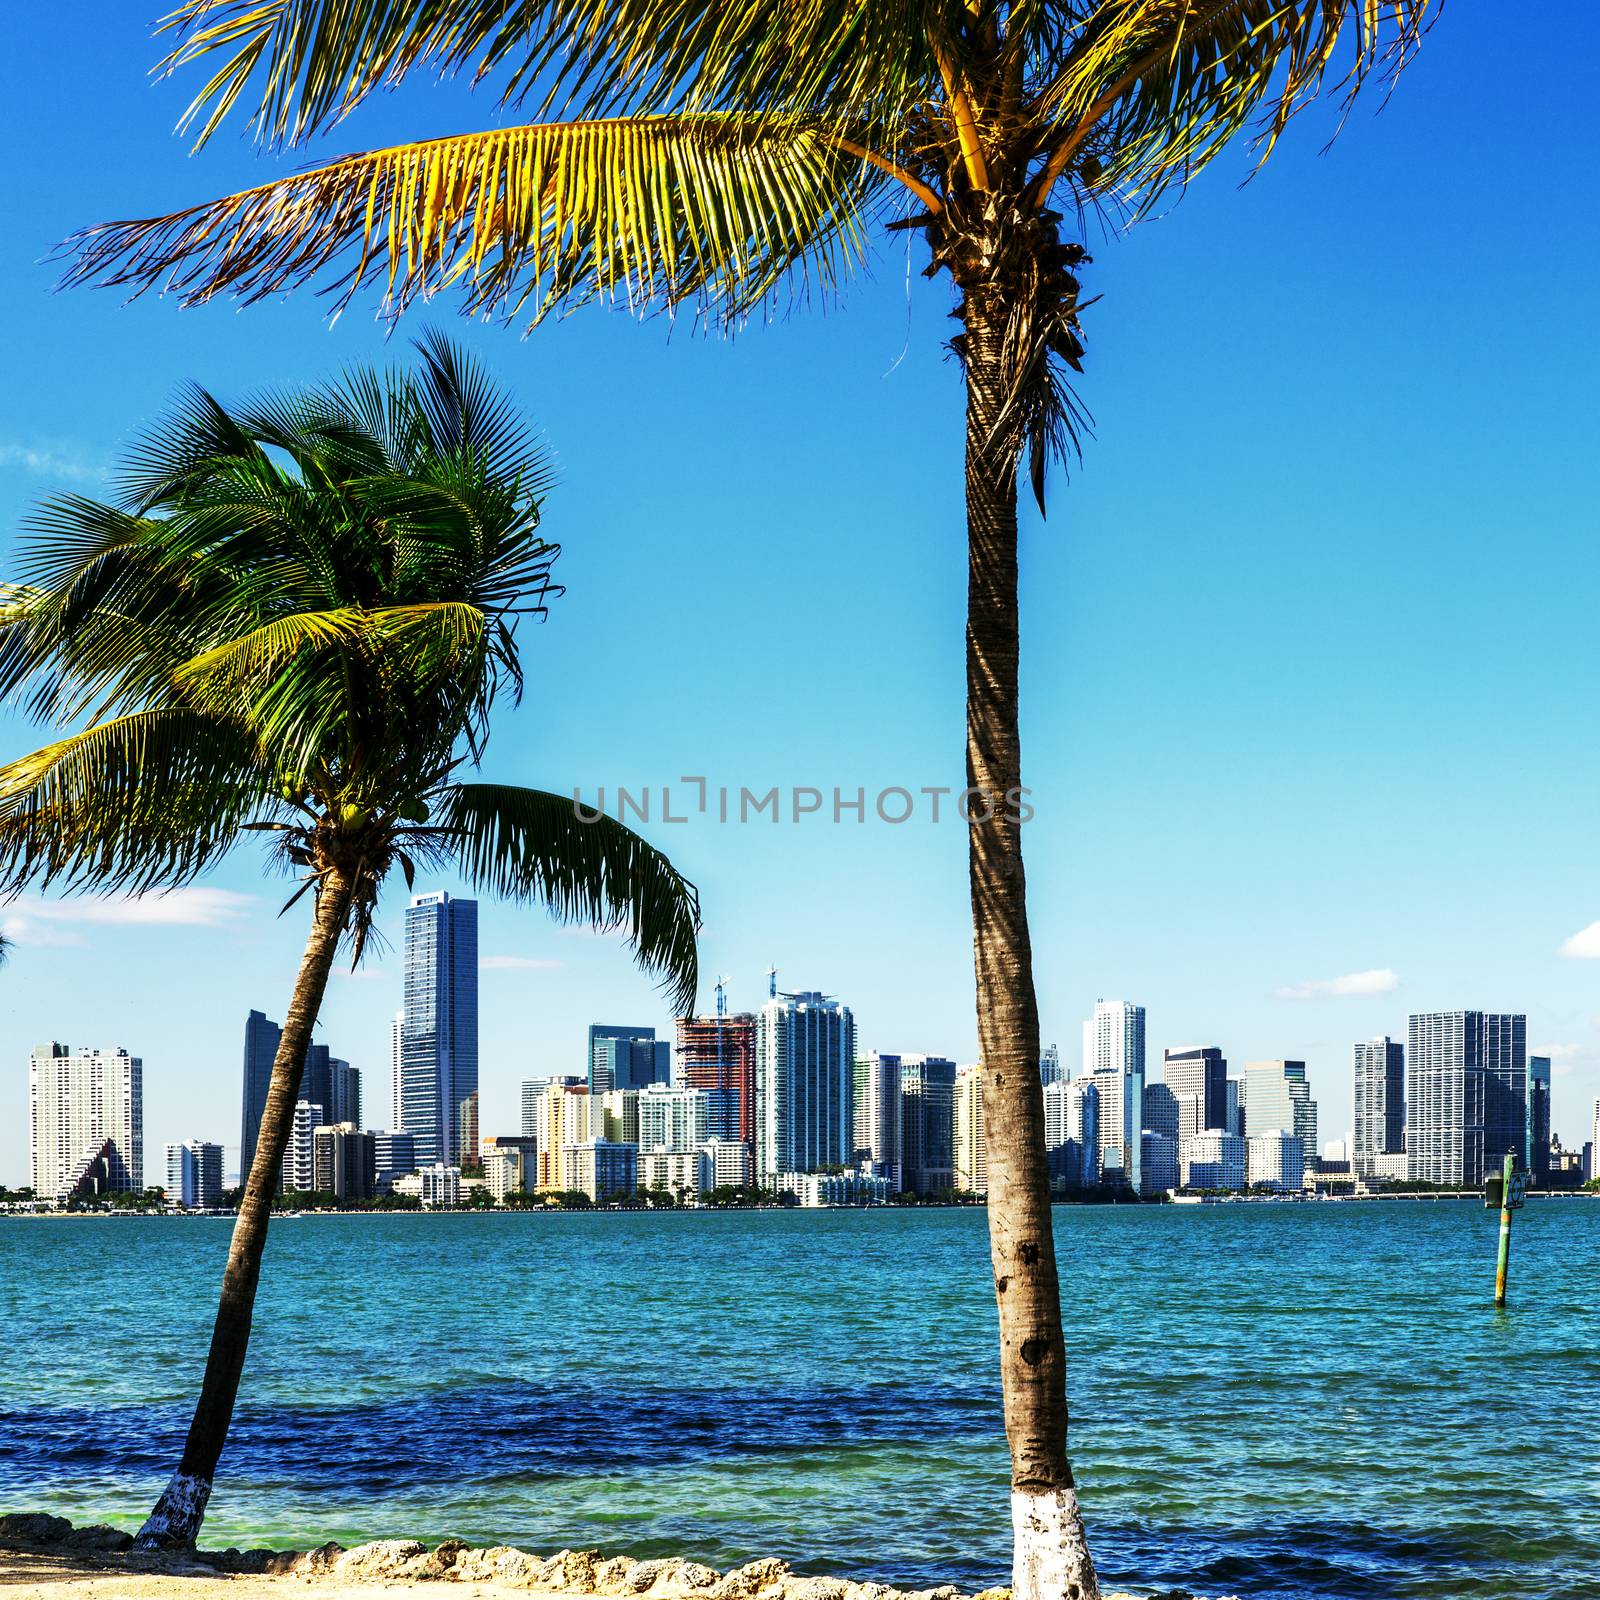 Miami Downtown skyline by ventdusud